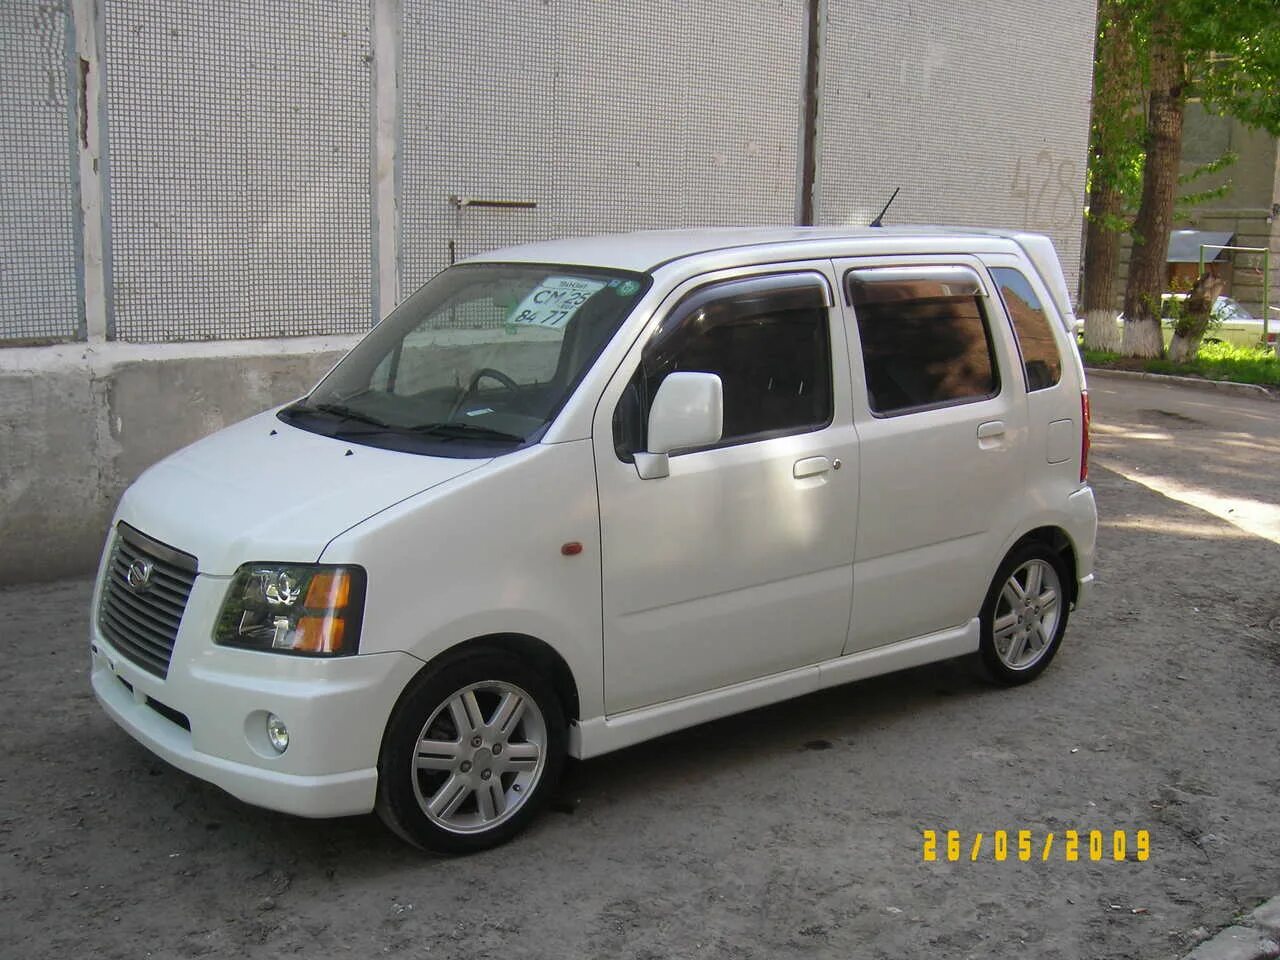 Wagon solio. Suzuki Wagon 2002. Suzuki Wagon r Solio 2002. Сузуки вагон Солио 2002. Сузуки вагон р Солио.